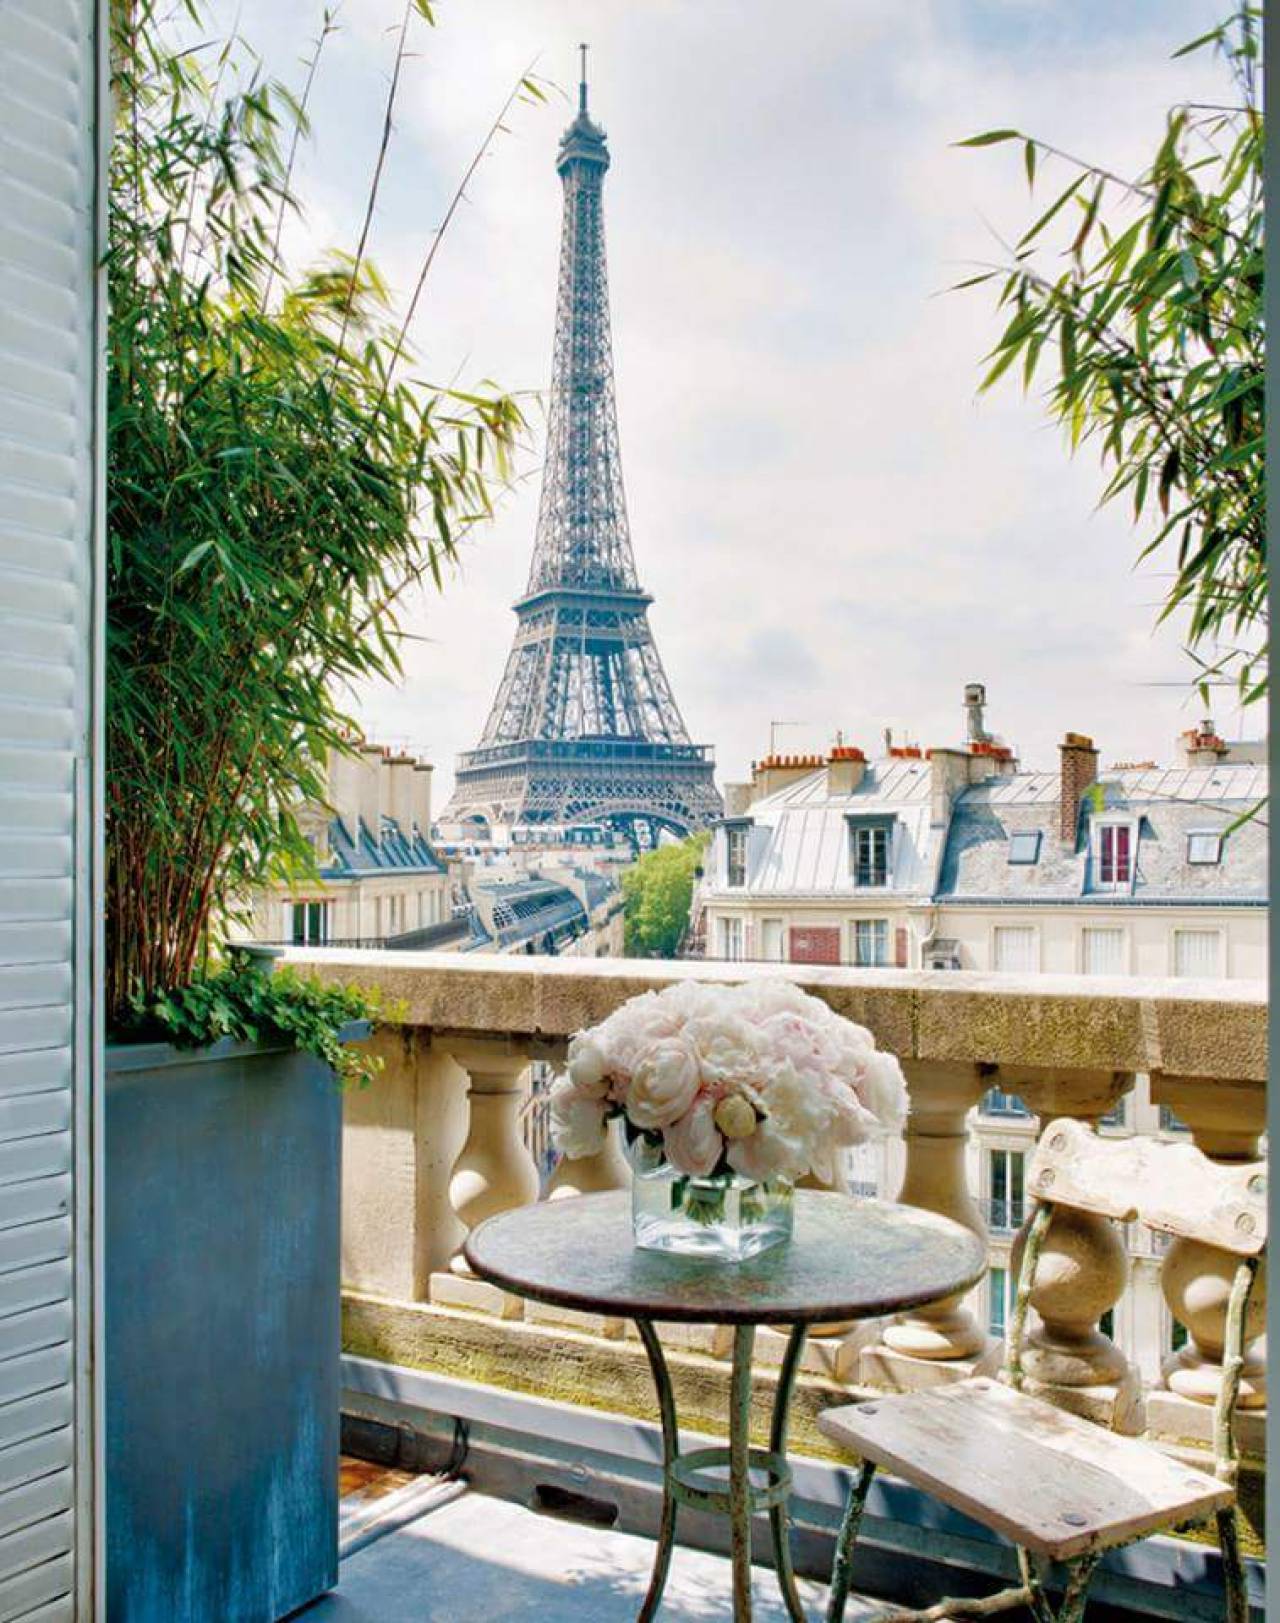 Вид на париж с эйфелевой башни. Отель в Париже с видом на Эйфелеву башню. Квартира в Париже с видом на Эйфелеву башню. Париж балкон Эйфель. Париж вид с балкона на Эйфелеву башню.